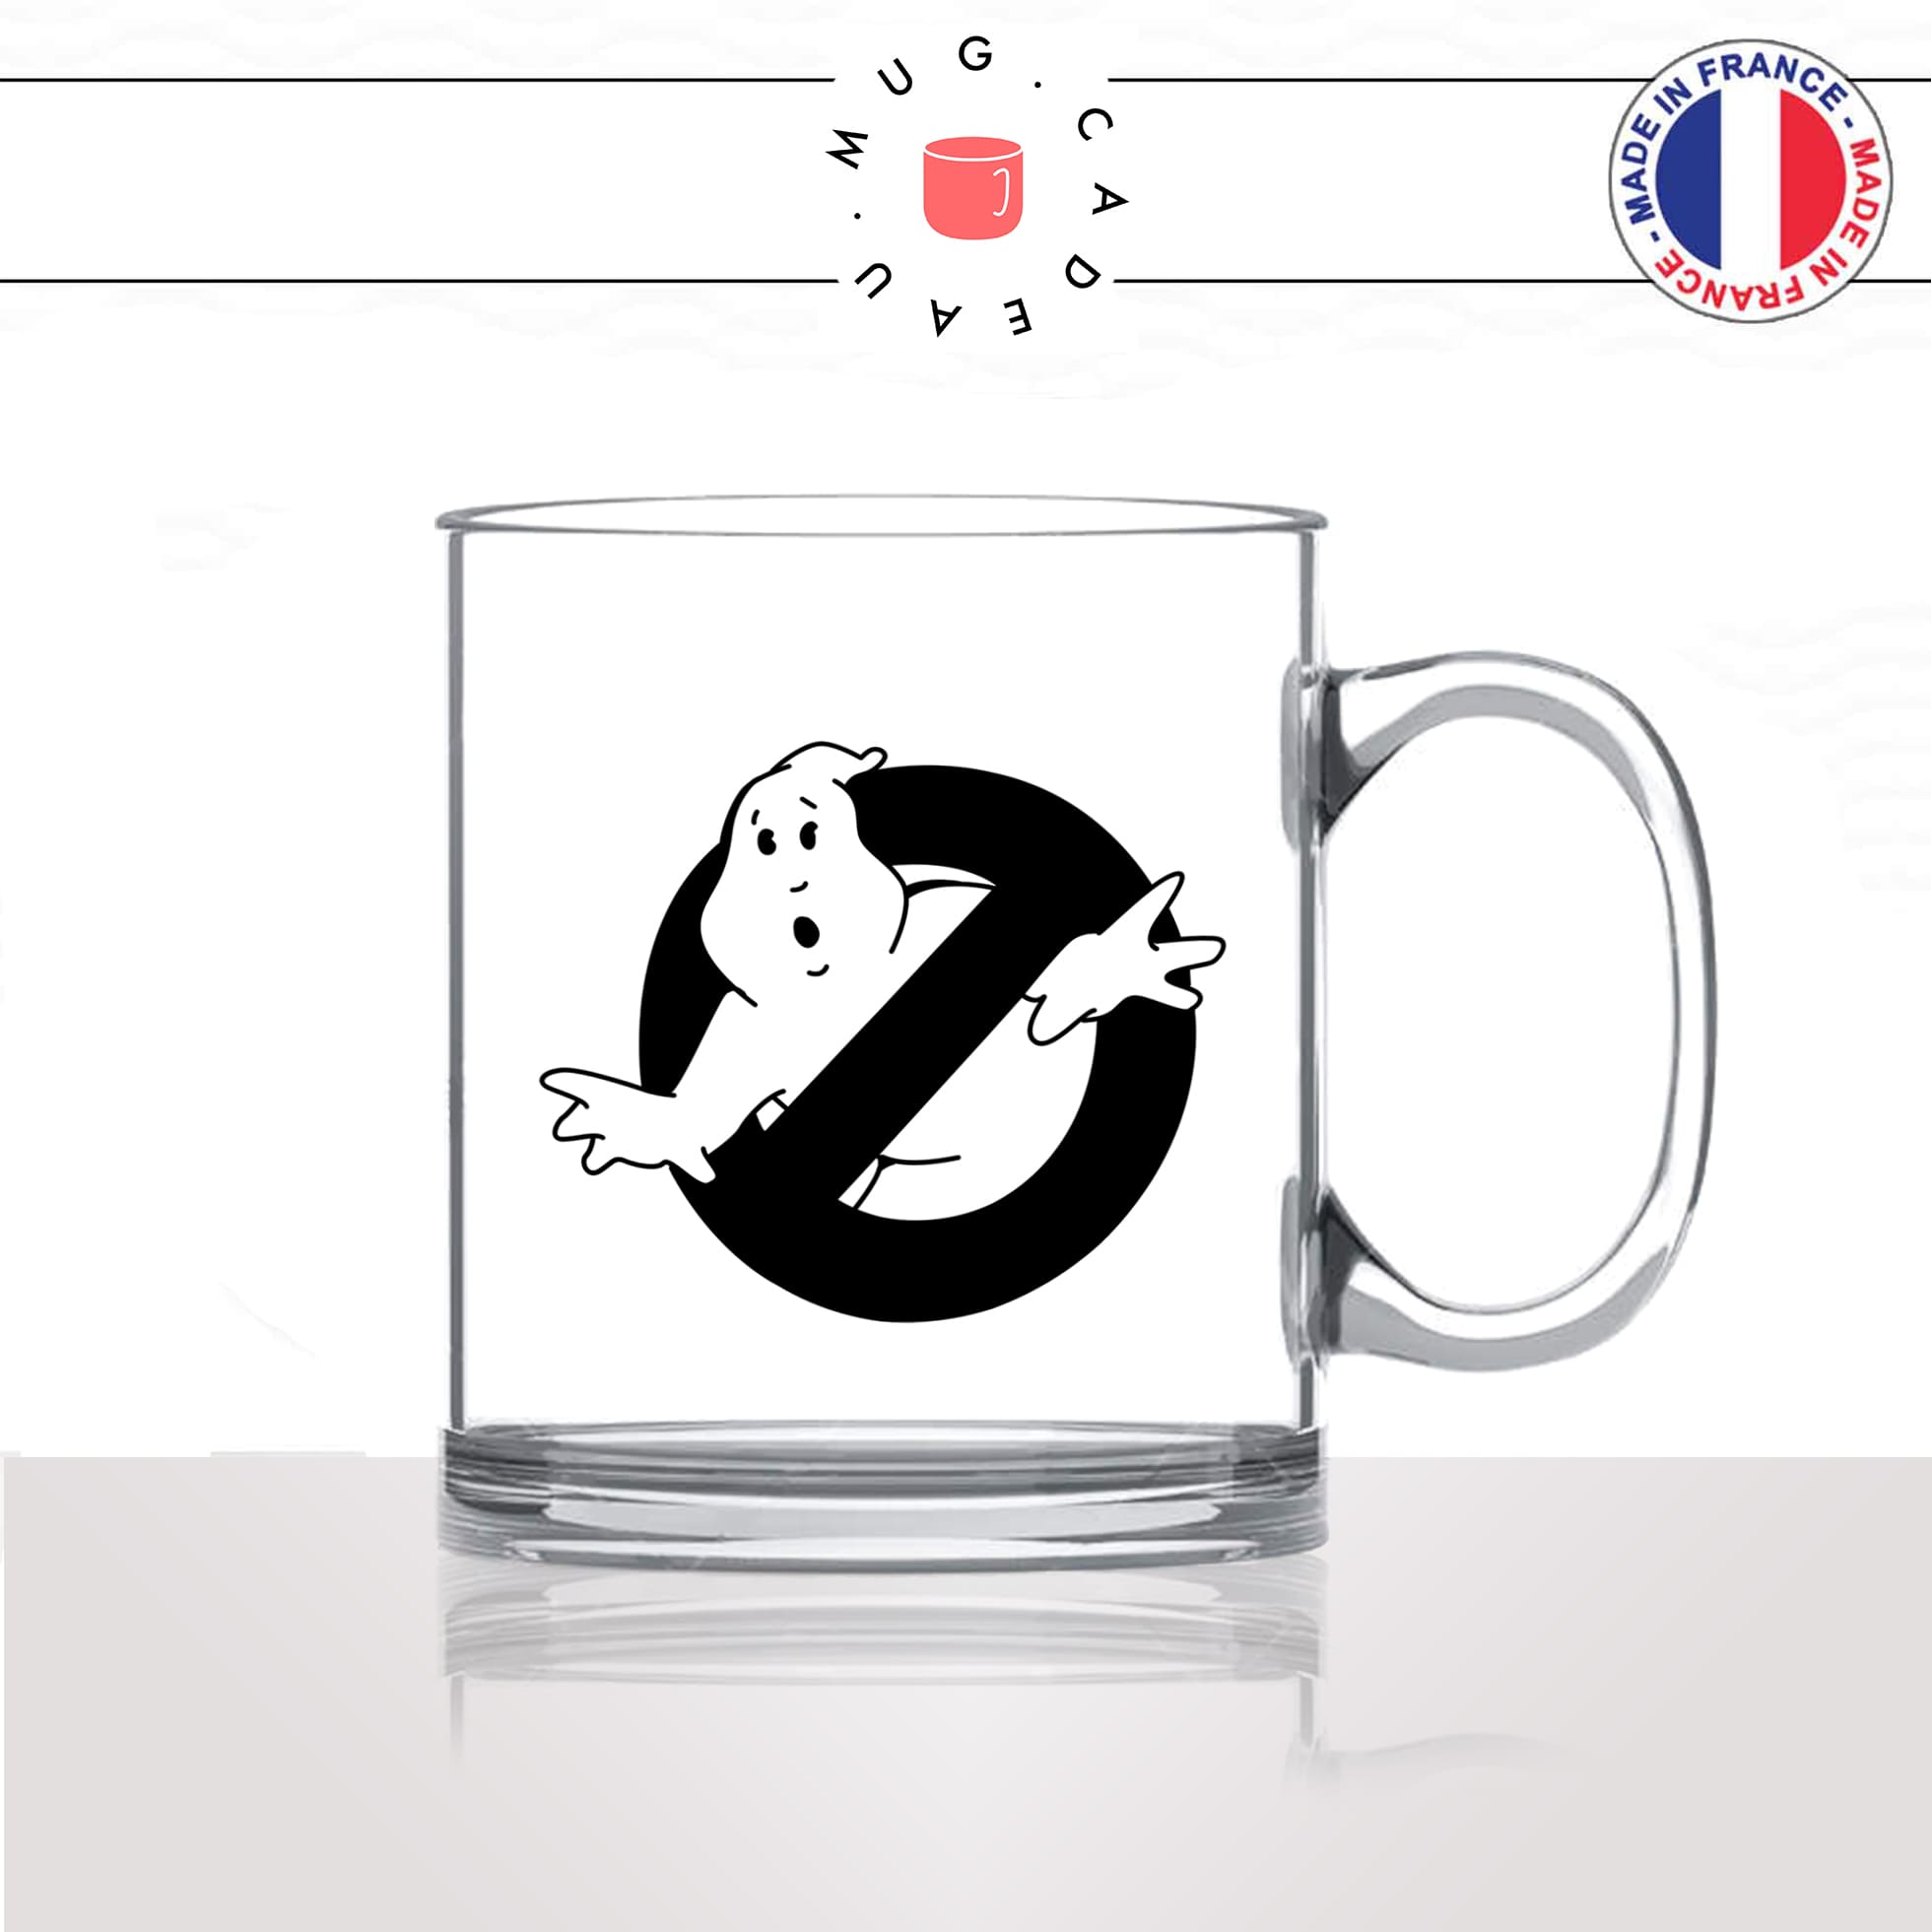 mug-tasse-en-verre-transparent-glass-film-américain-ghost-buster-chasseur-de-fantomes-halloween-alien-humour-idée-cadeau-fun-cool-café-thé2